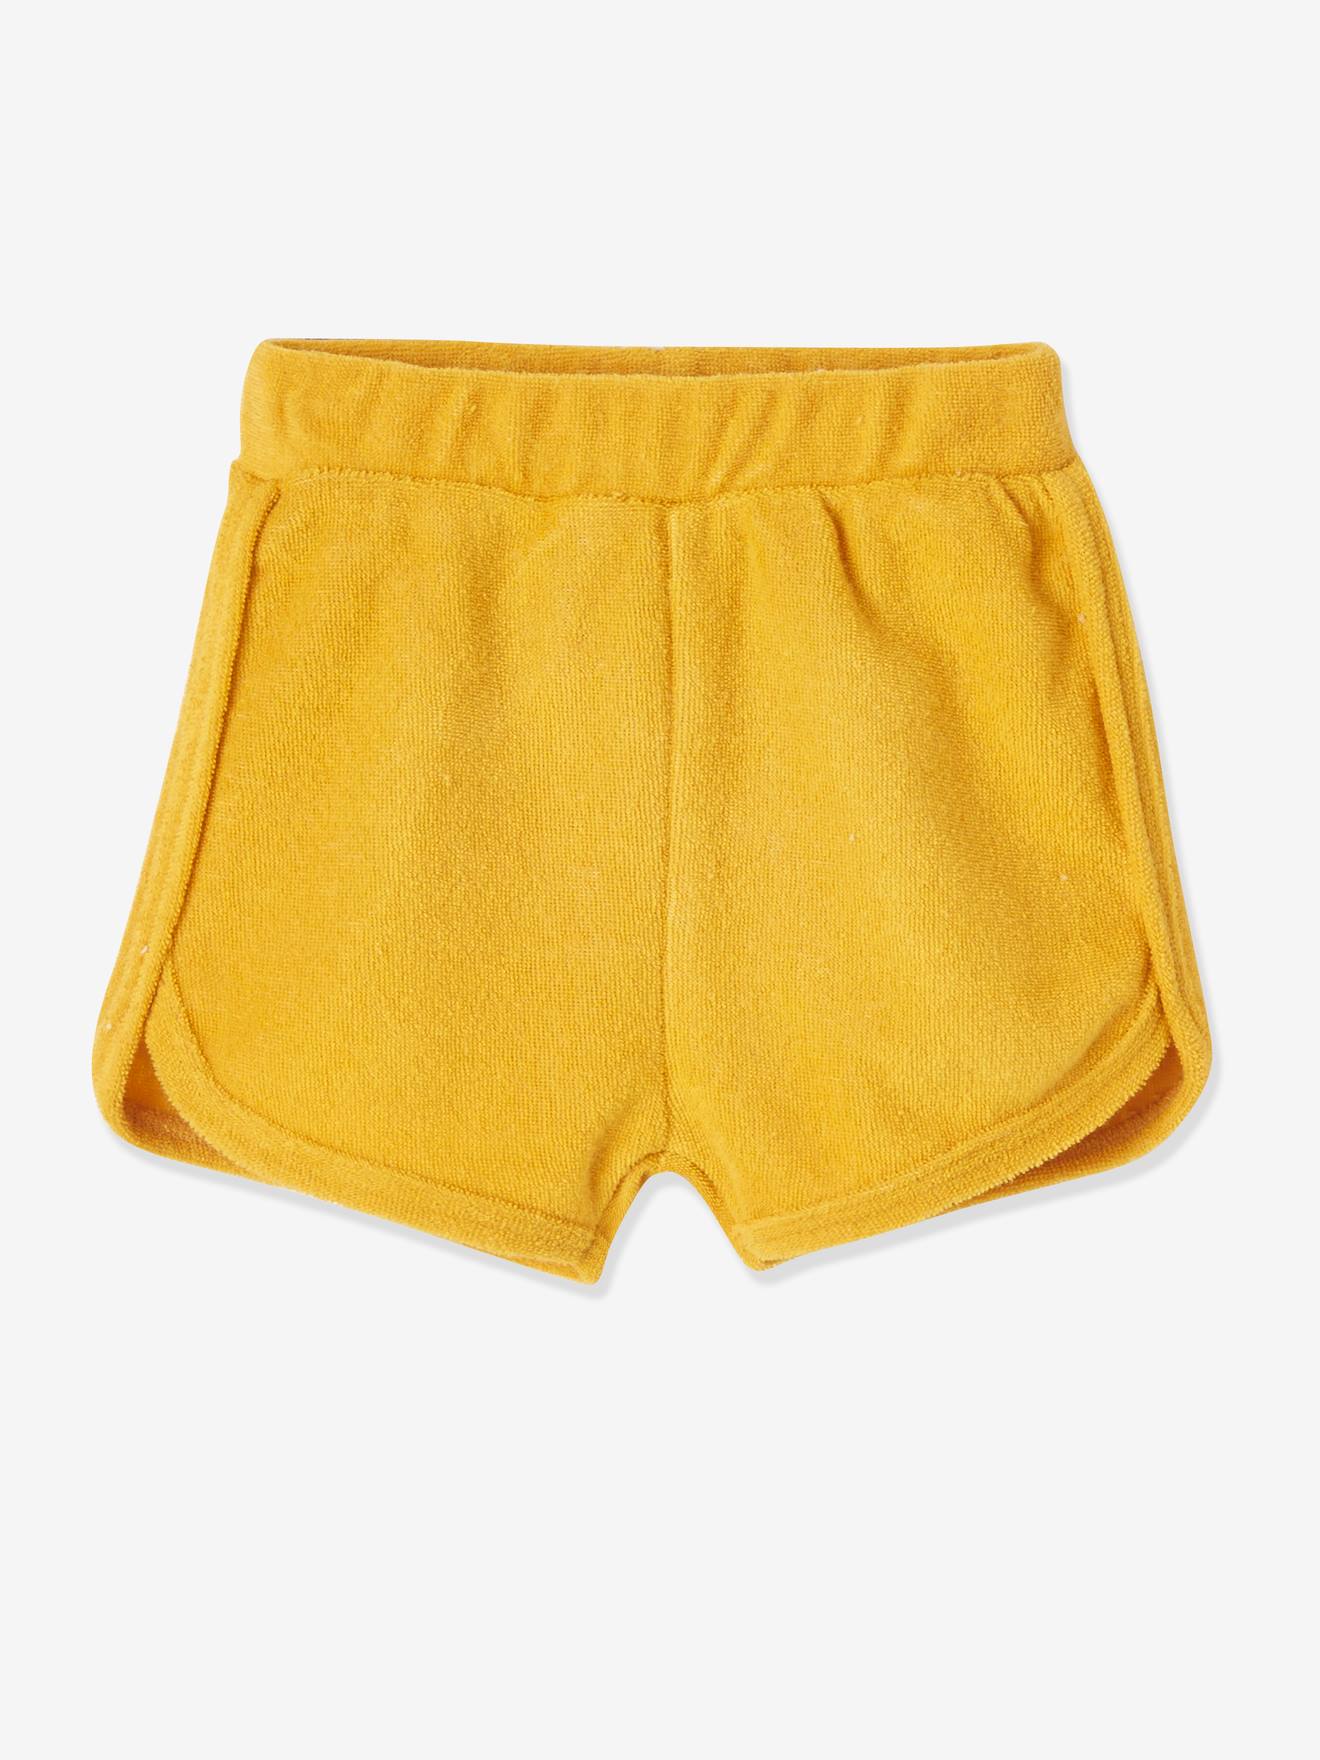 lila behuizing Razernij Set van 4 badstof shorts voor baby's - safraangele set, Baby